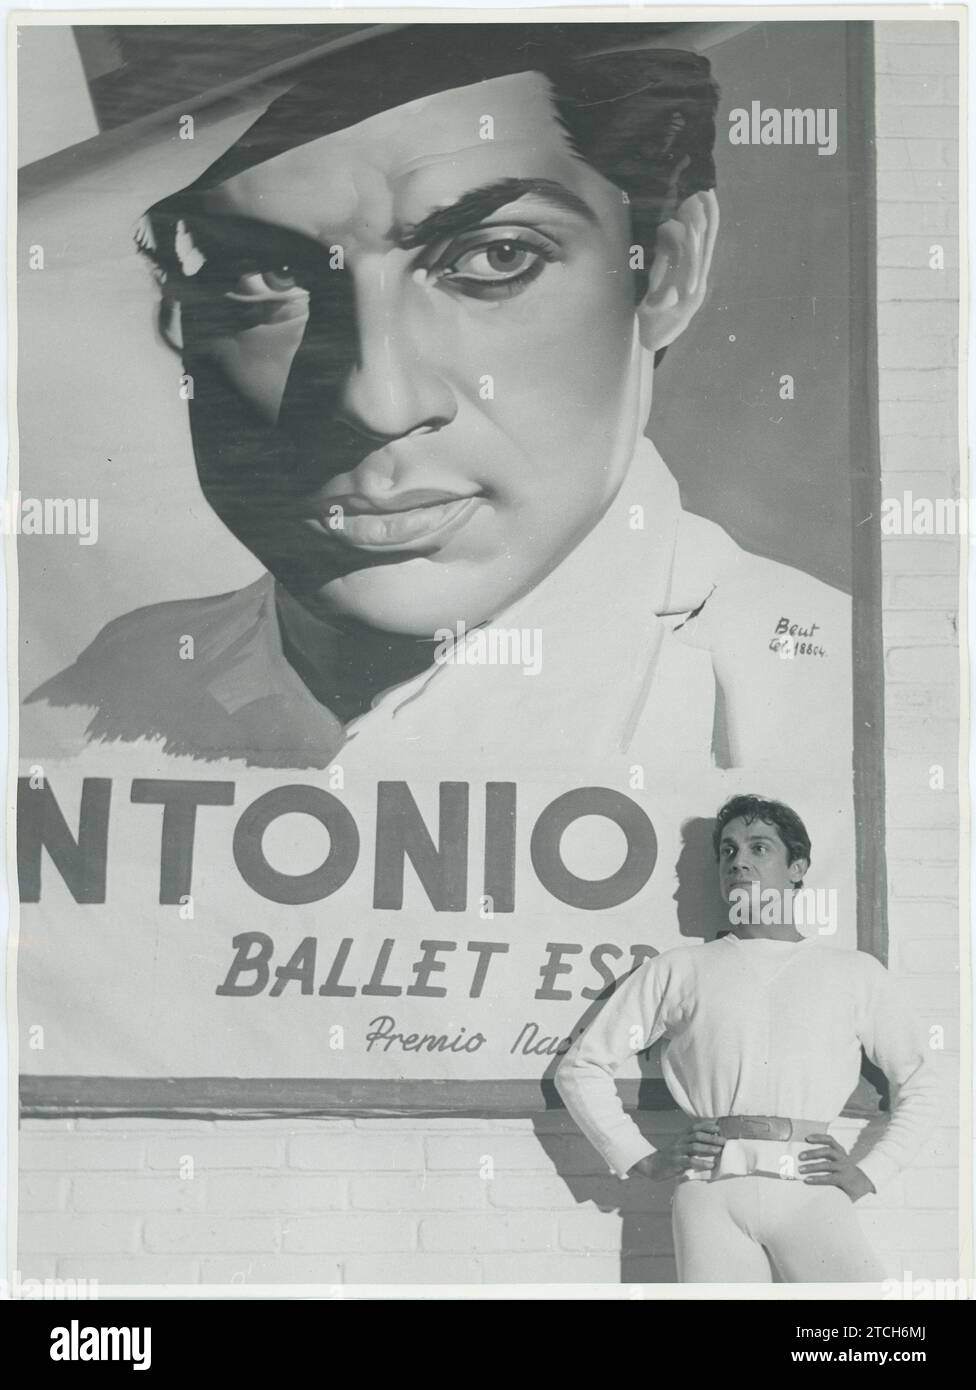 01/01/1959. Antonio der Tänzer posiert vor seinem Werbeplakat. Quelle: Album / Archivo ABC / Basabe Stockfoto